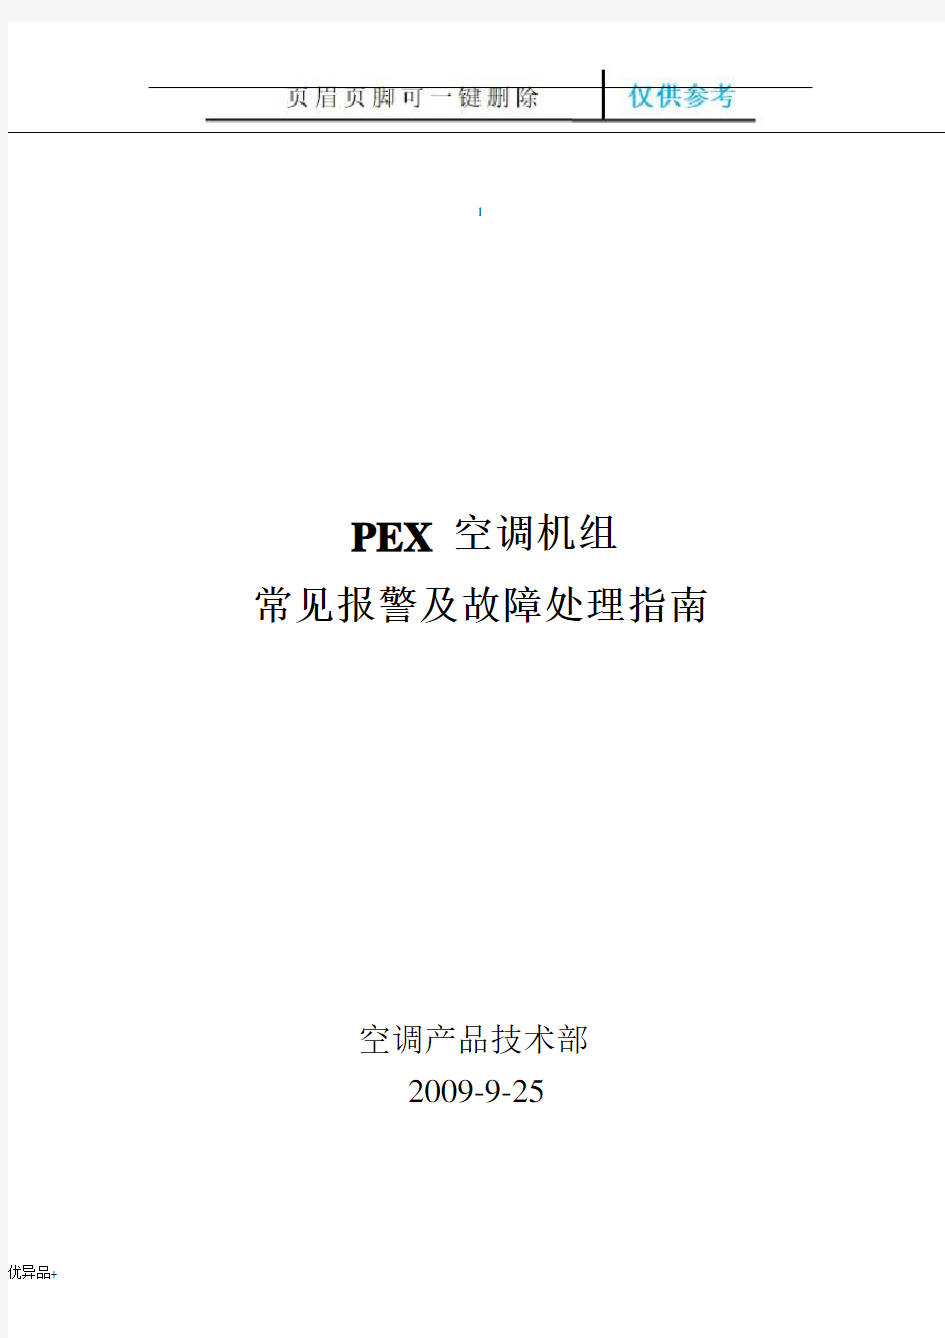 艾默生PEX精密空调故障告警及使用指南(精校版本)